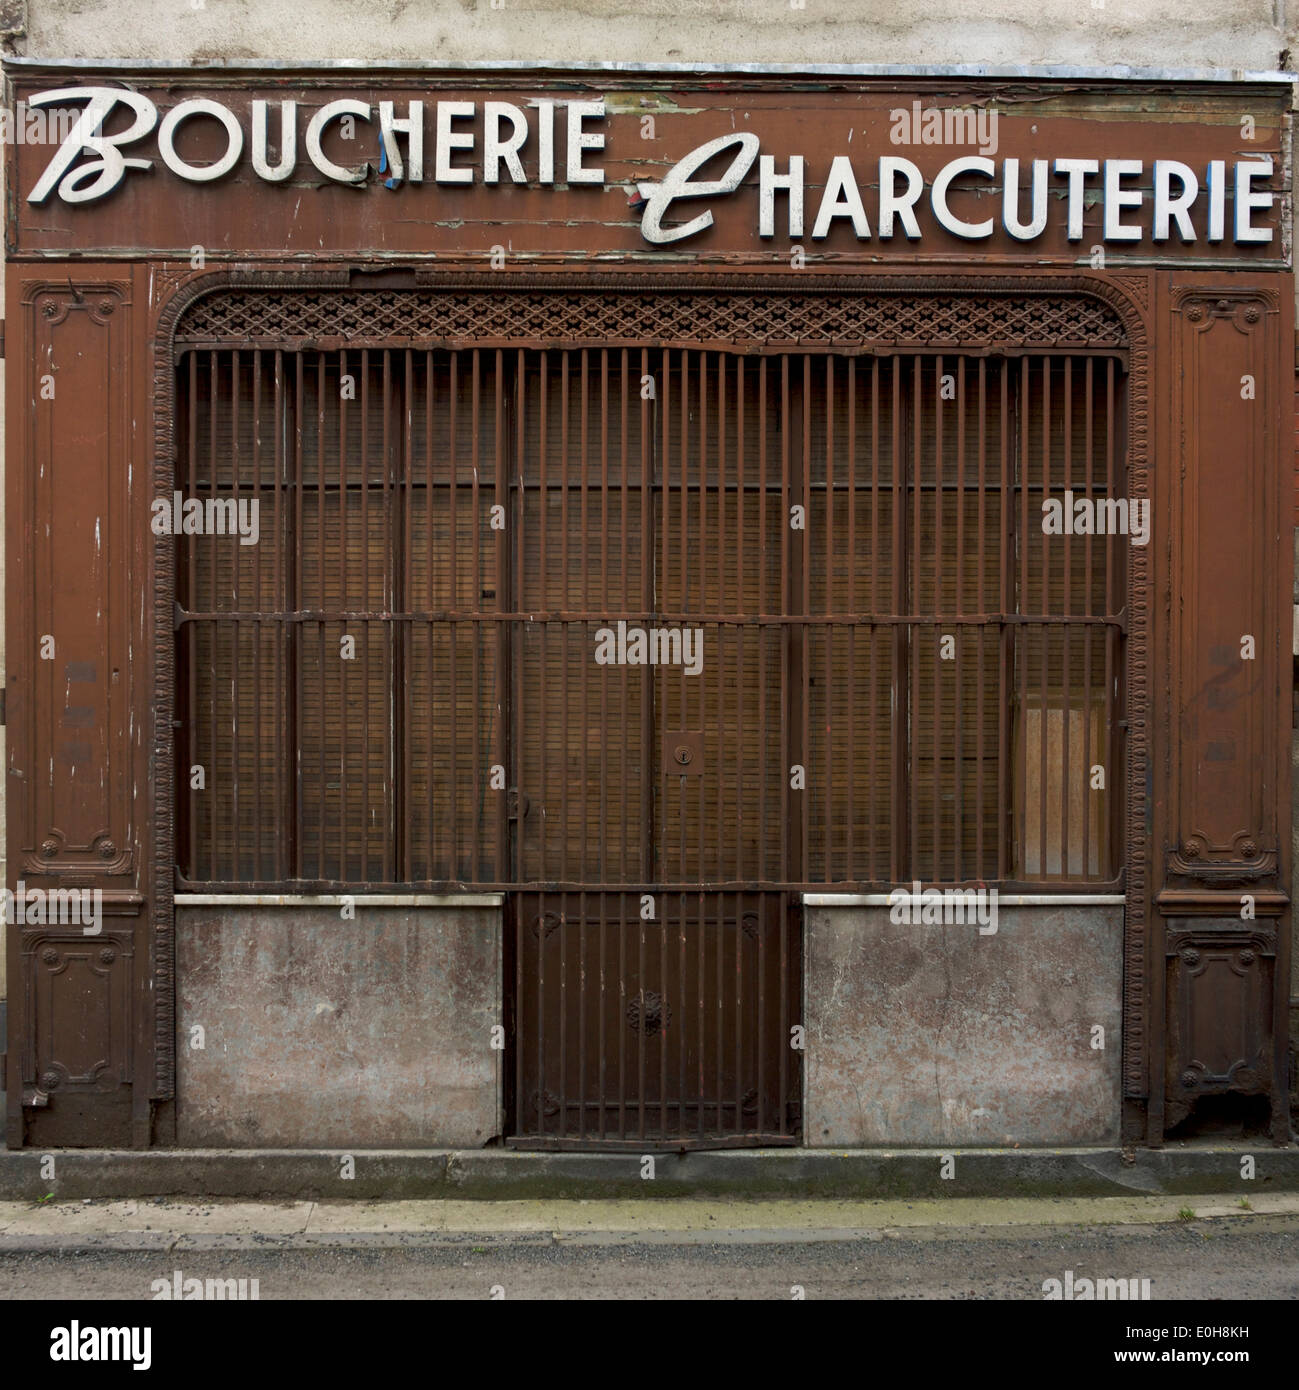 Fermé à l'ancienne des bouchers français shop Banque D'Images